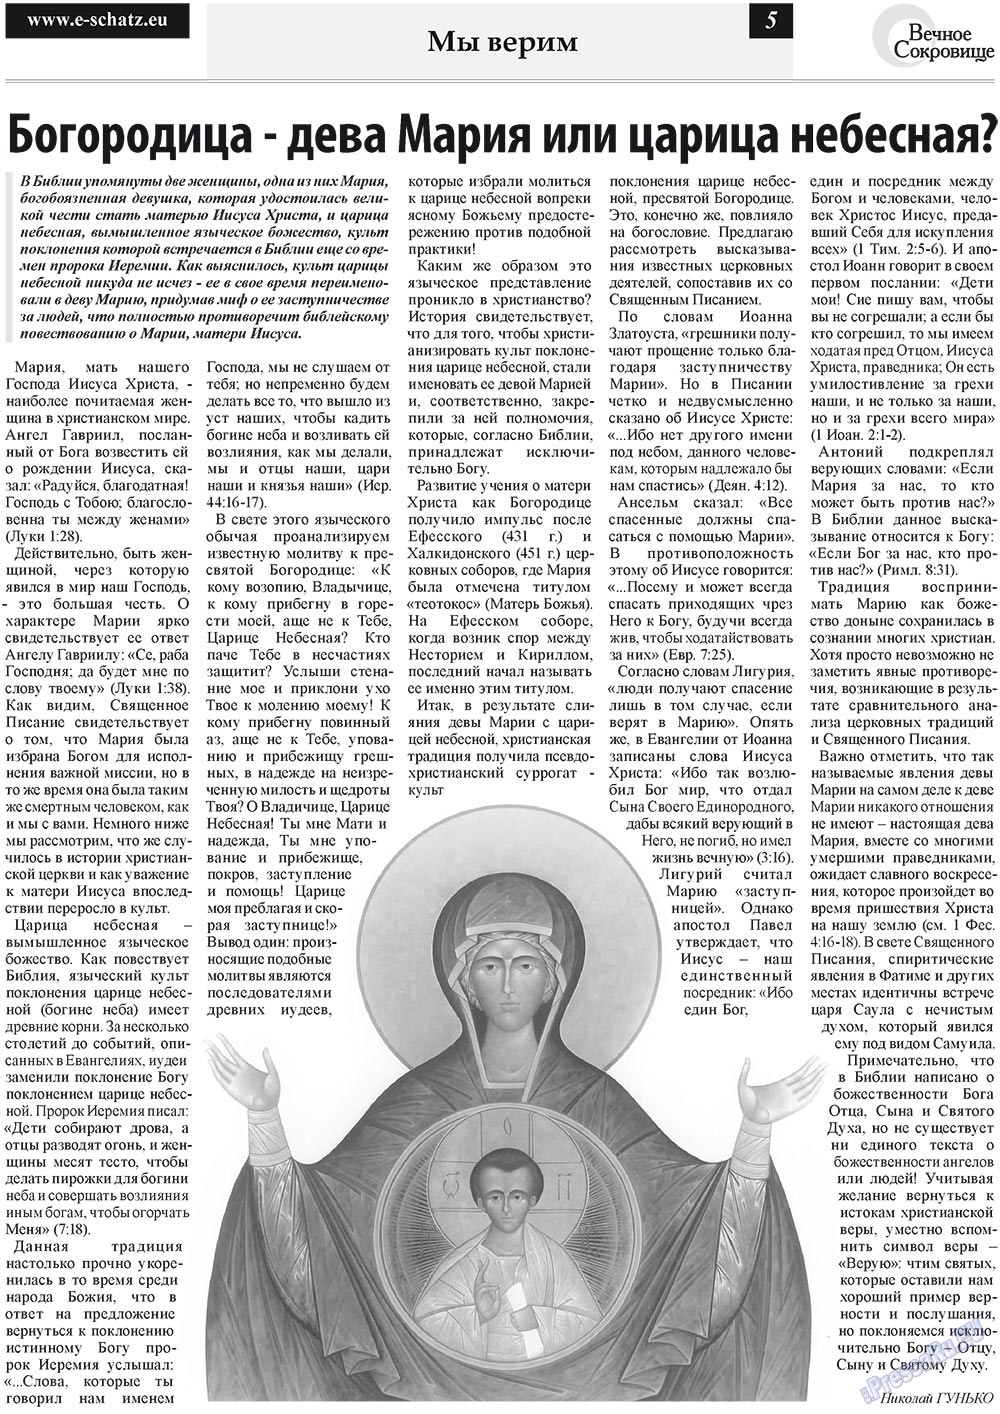 Вечное сокровище (газета). 2011 год, номер 3, стр. 5